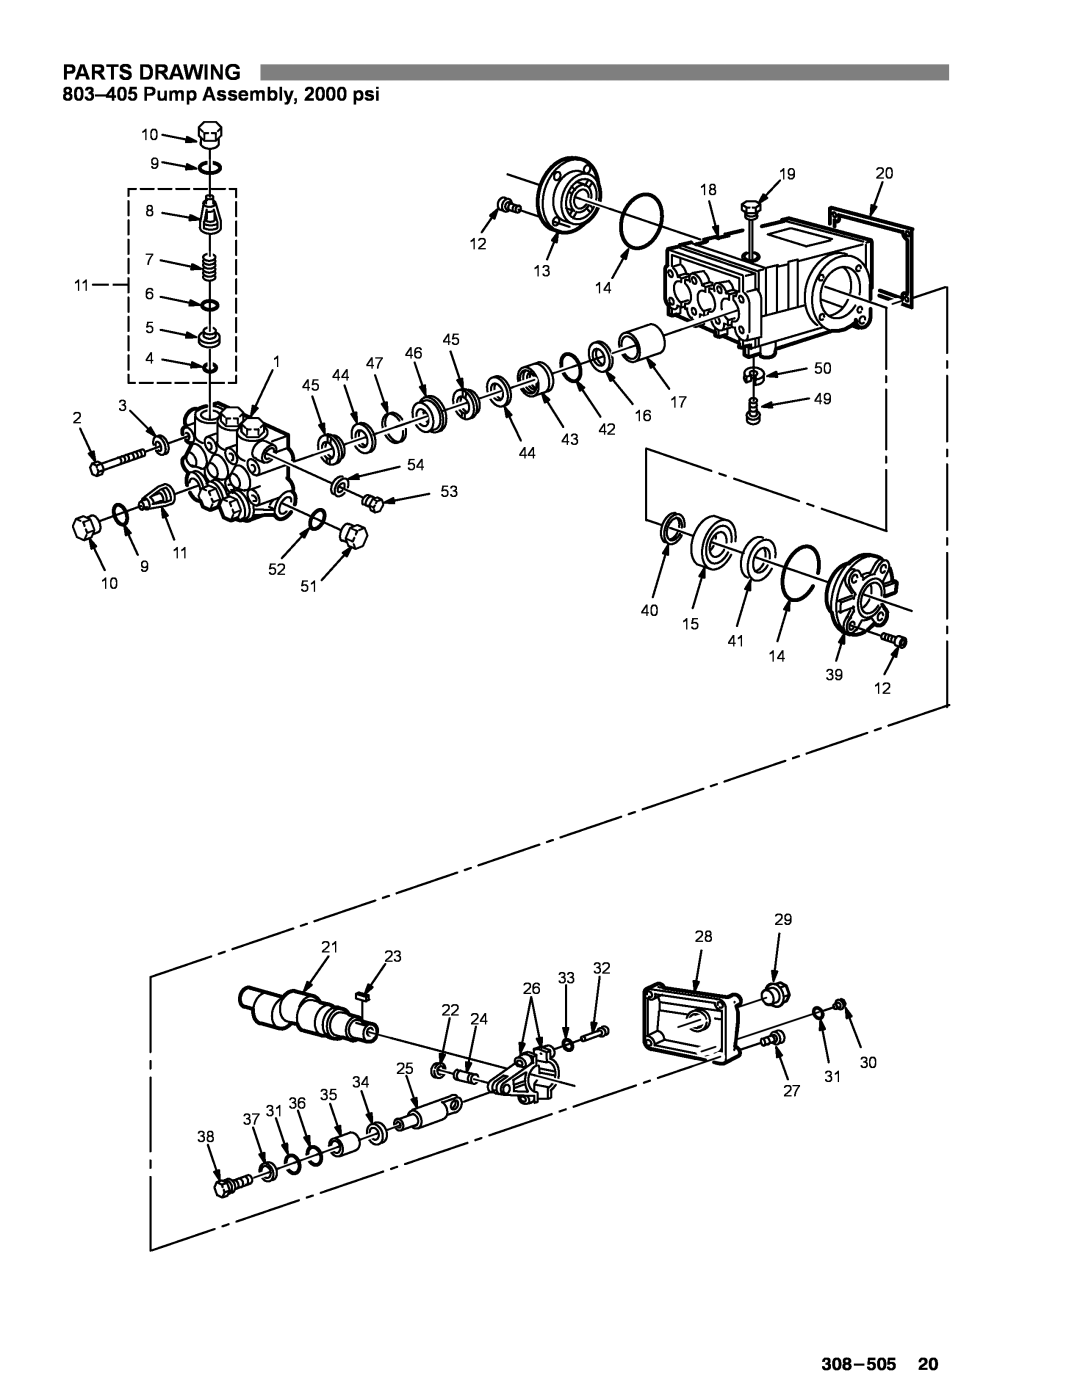 Graco Inc 1535, 800-164, 800-290, 308-505, 800-165, 800-367, 2040 manual Pump Assembly, 2000 psi,  , Parts Drawing 